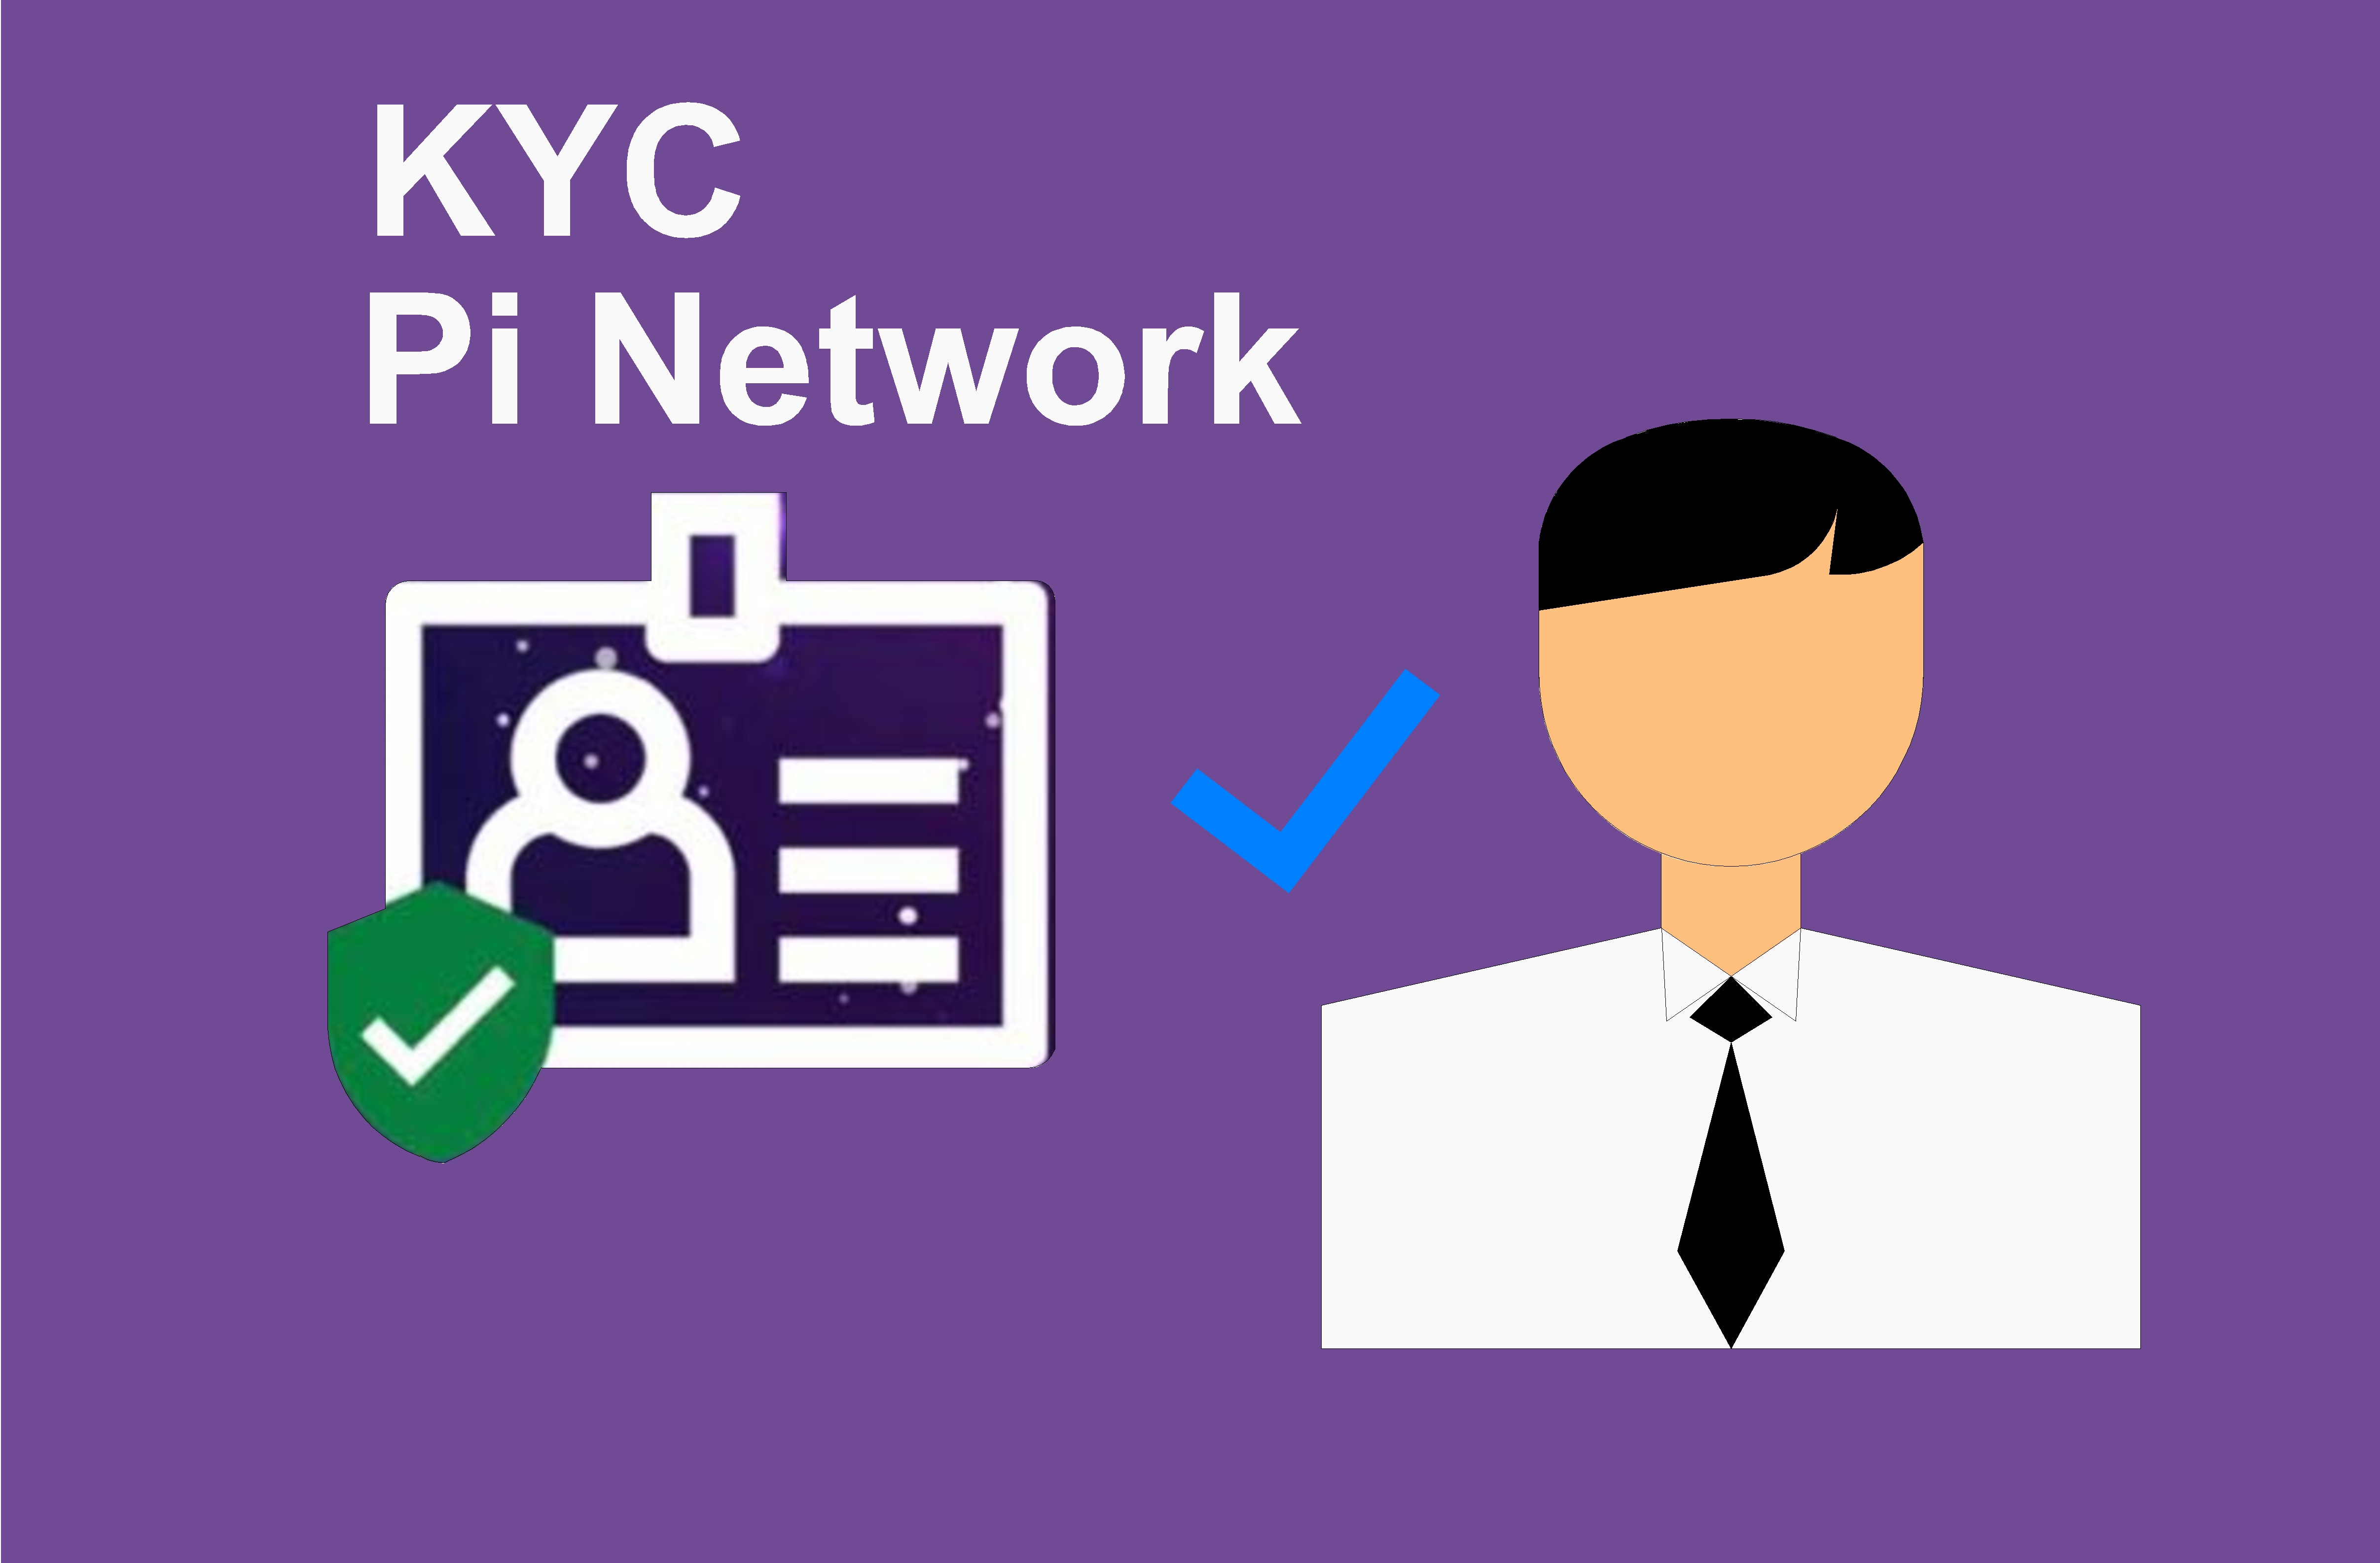 KYC Pi Network là gì